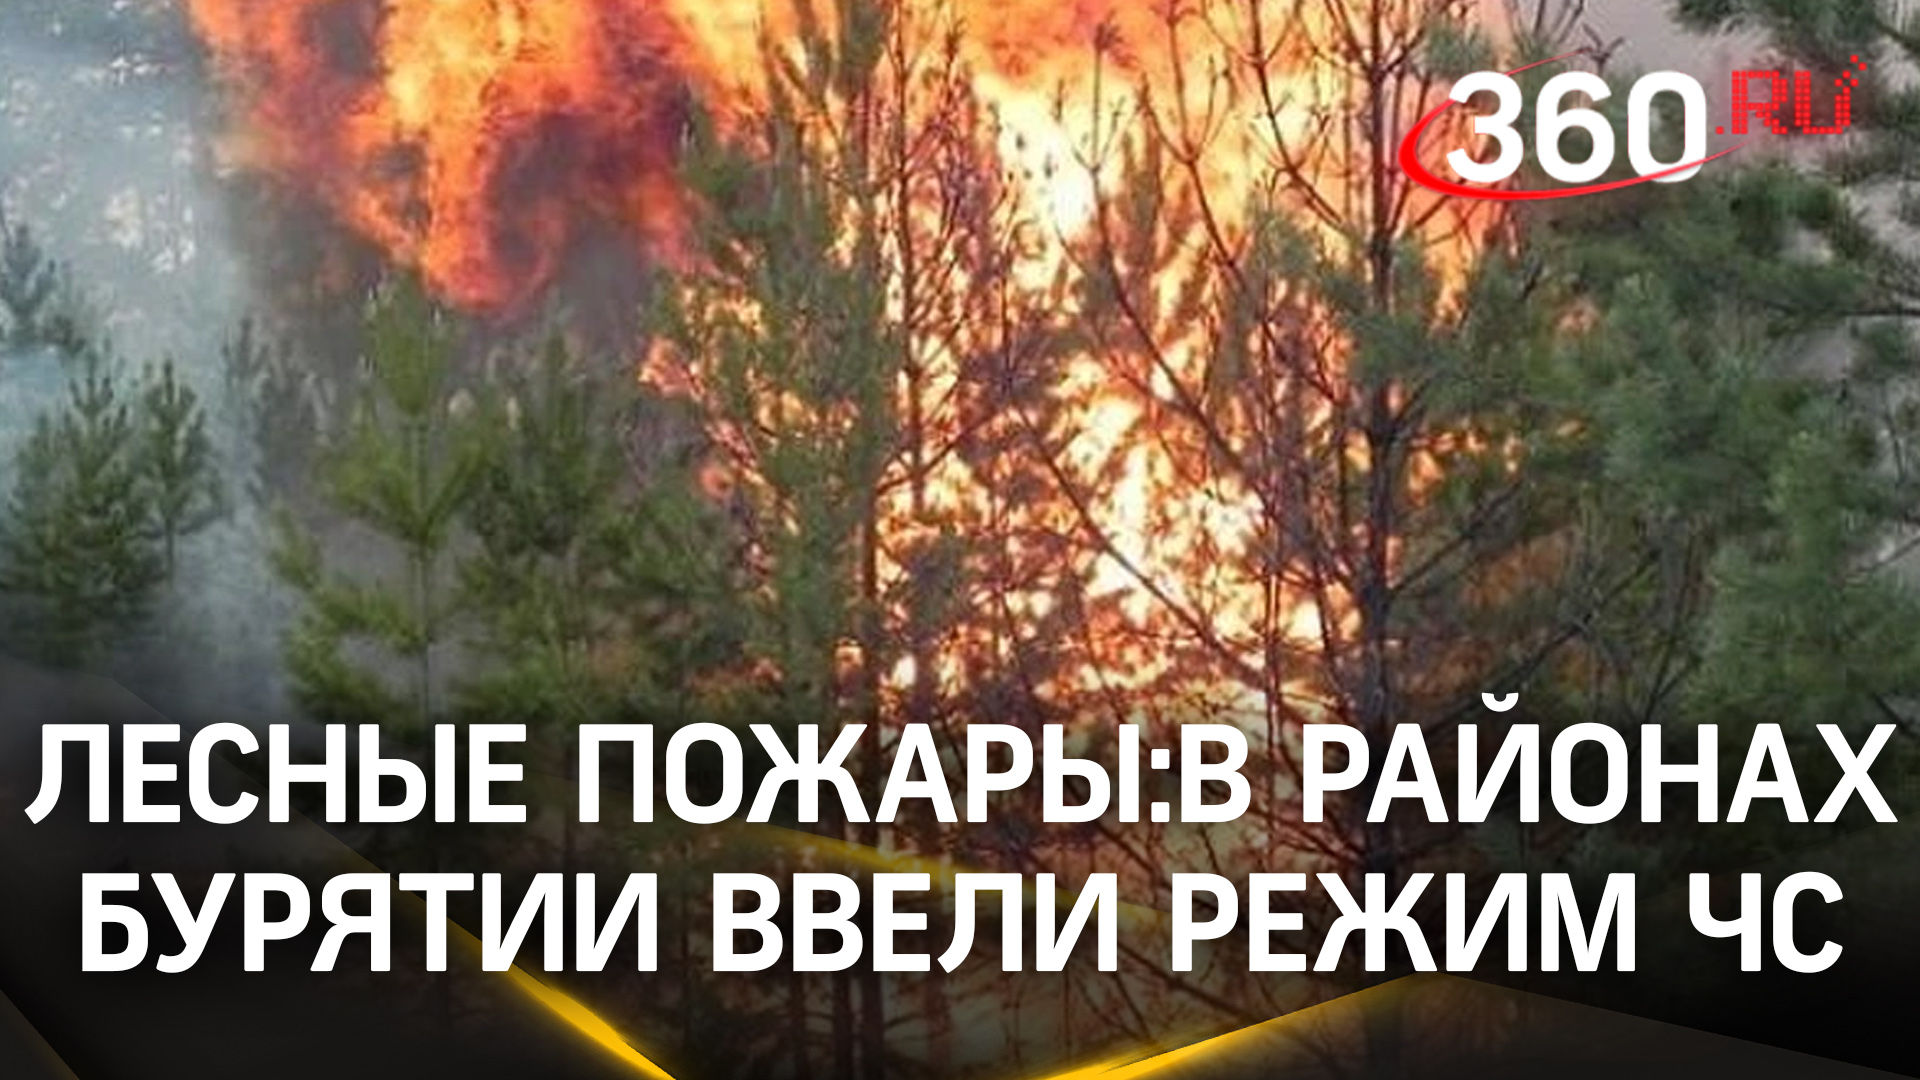 8 тыс. гектаров пламени охватили Бурятию. Власти ввели режим ЧС, а жителям запретили ходить в лес